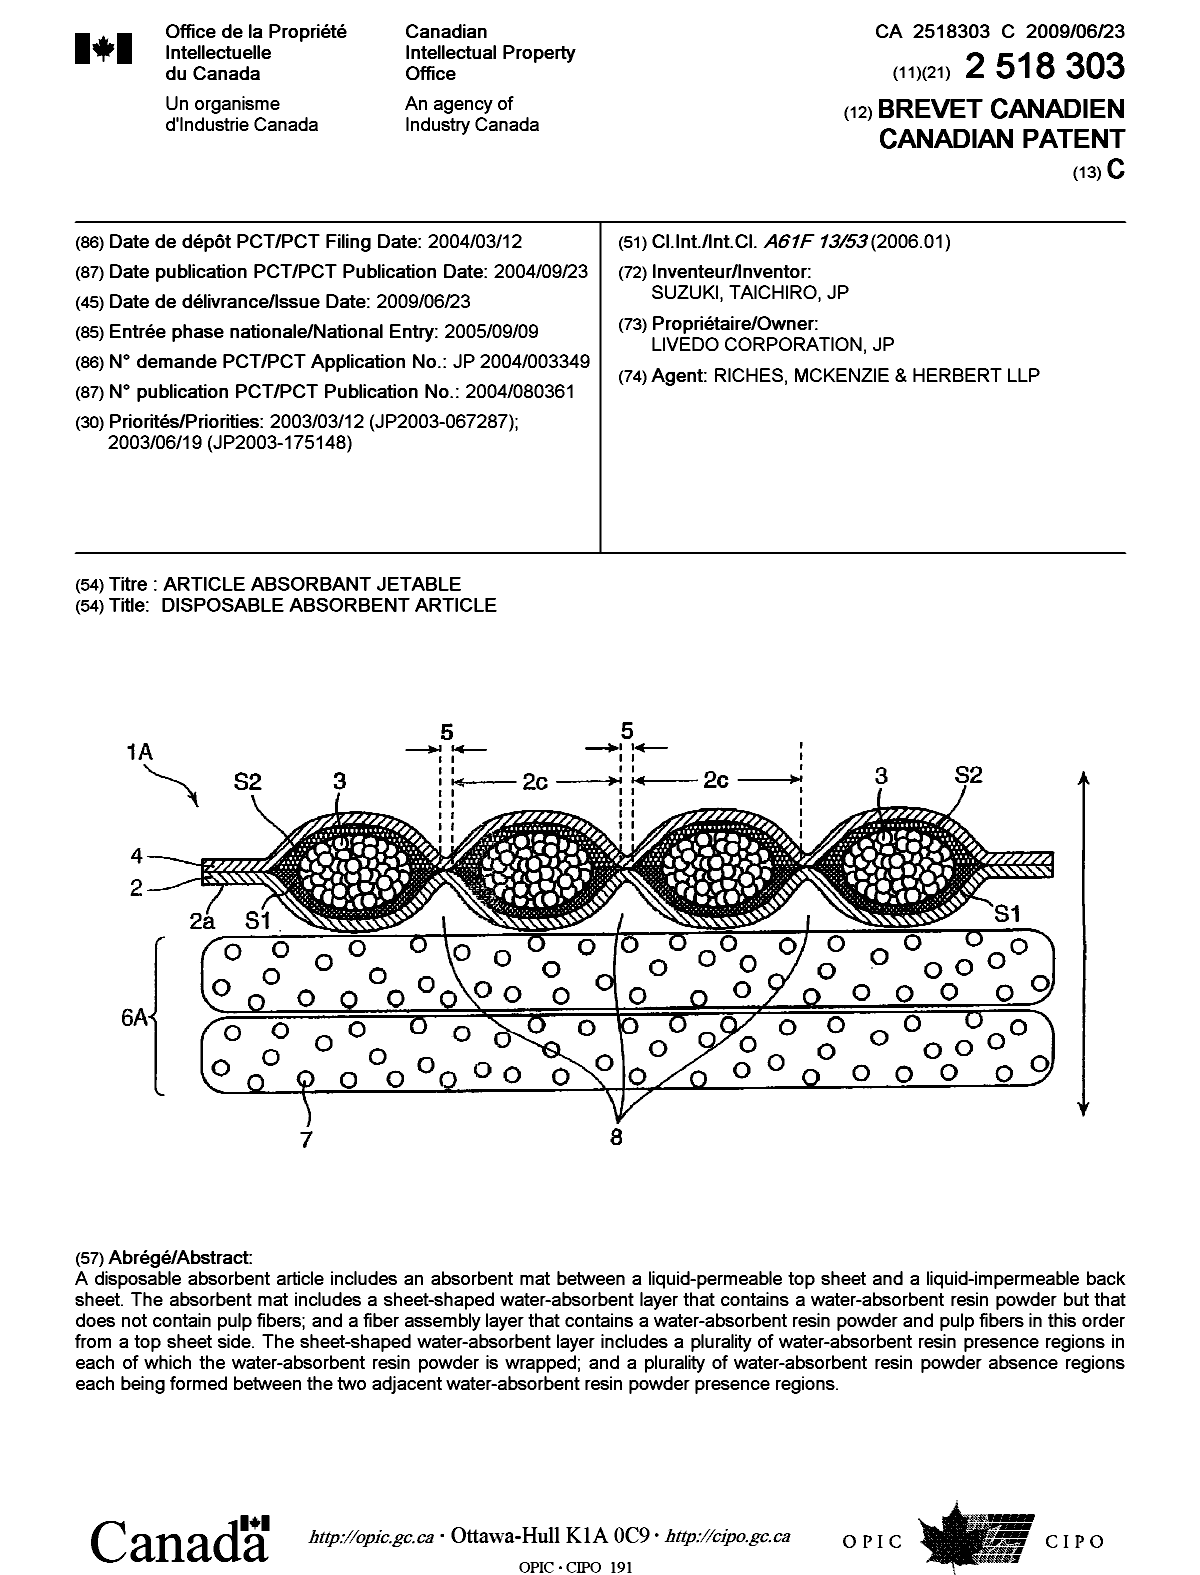 Document de brevet canadien 2518303. Page couverture 20090605. Image 1 de 1